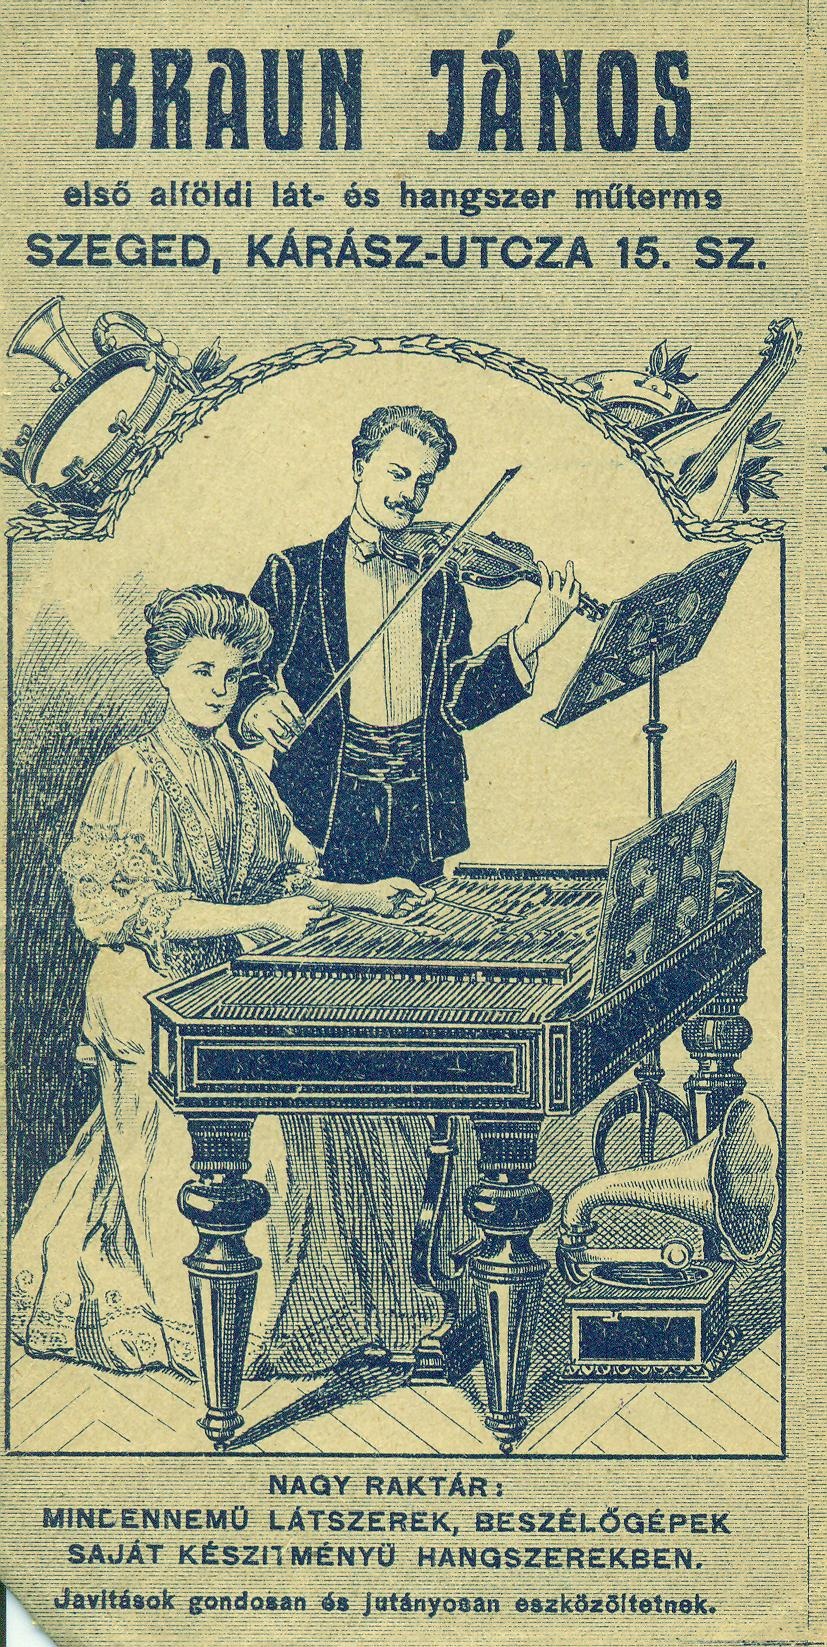 BRAUN JÁNOS első alföldi lát- és hangszer műterme (Magyar Kereskedelmi és Vendéglátóipari Múzeum CC BY-NC-SA)